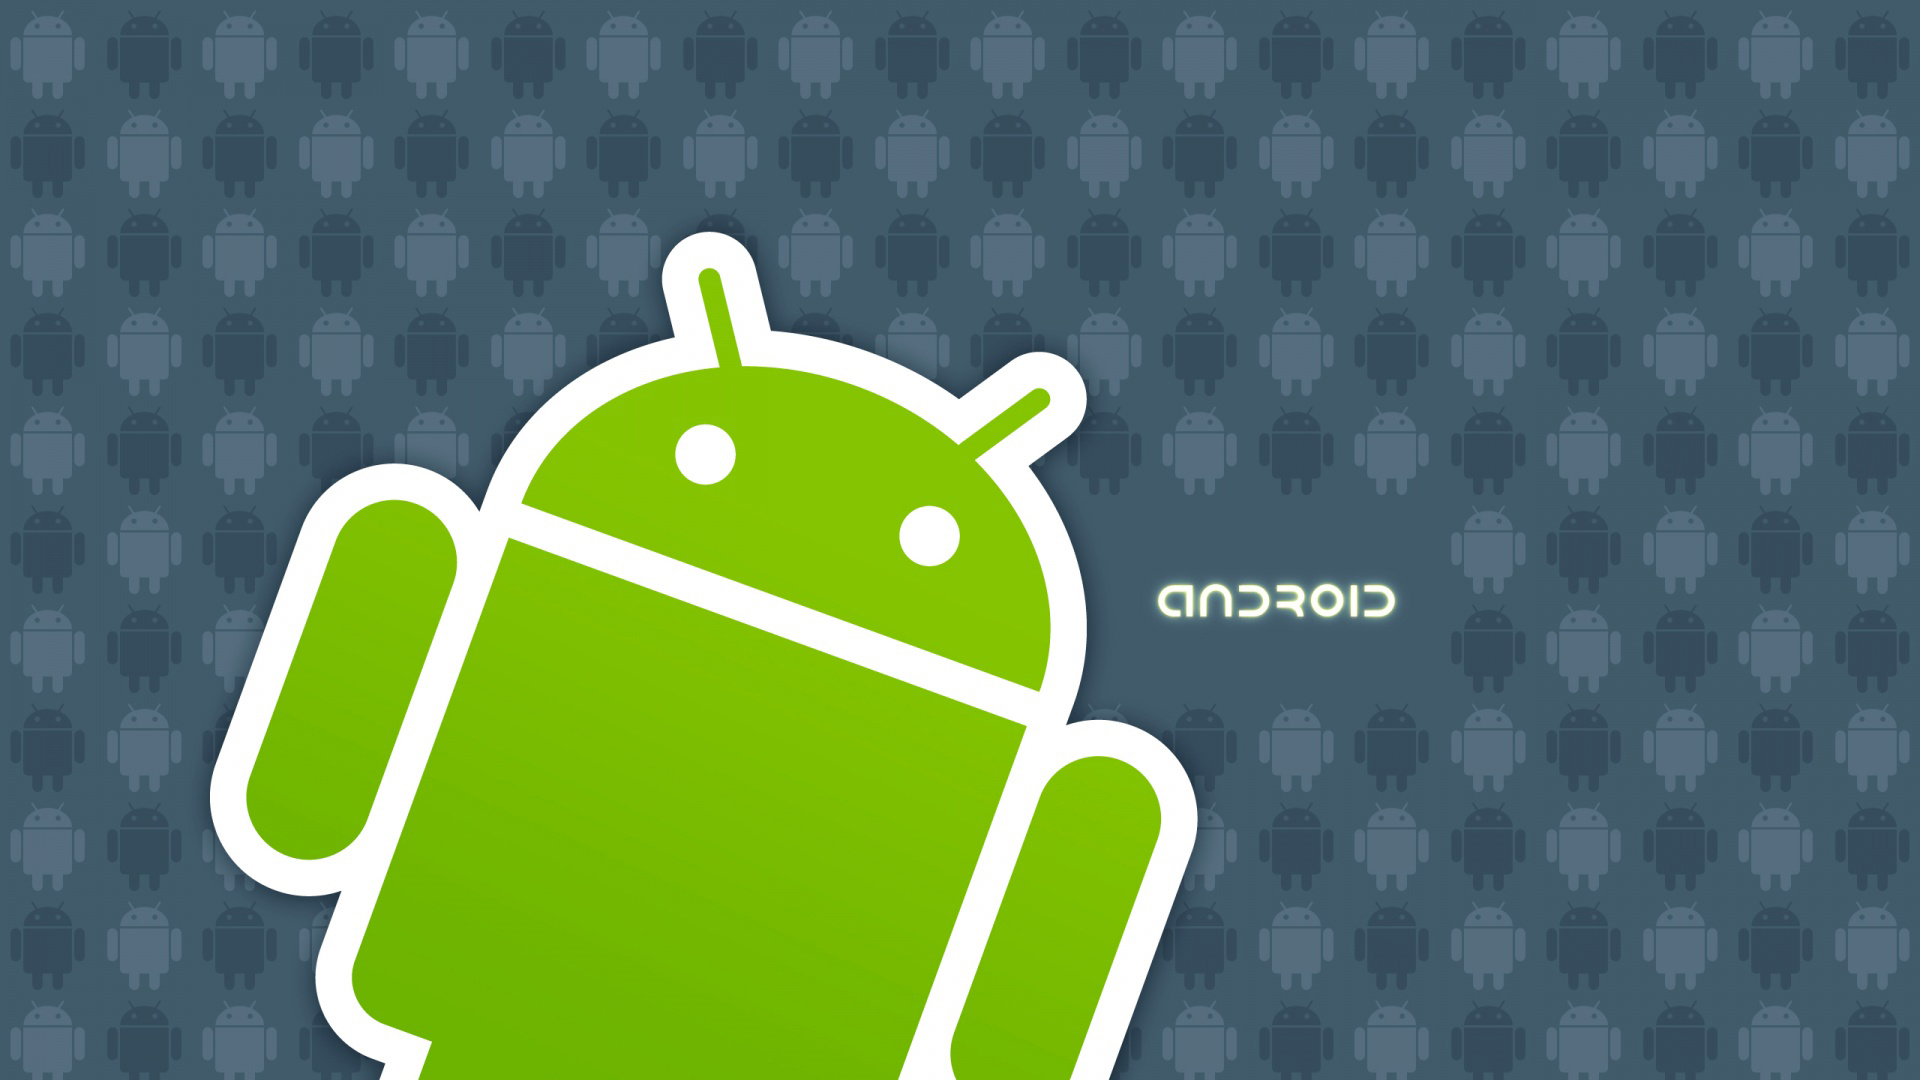 Android second. Андроид. Логотип андроид. Изображение андроида. Андро.